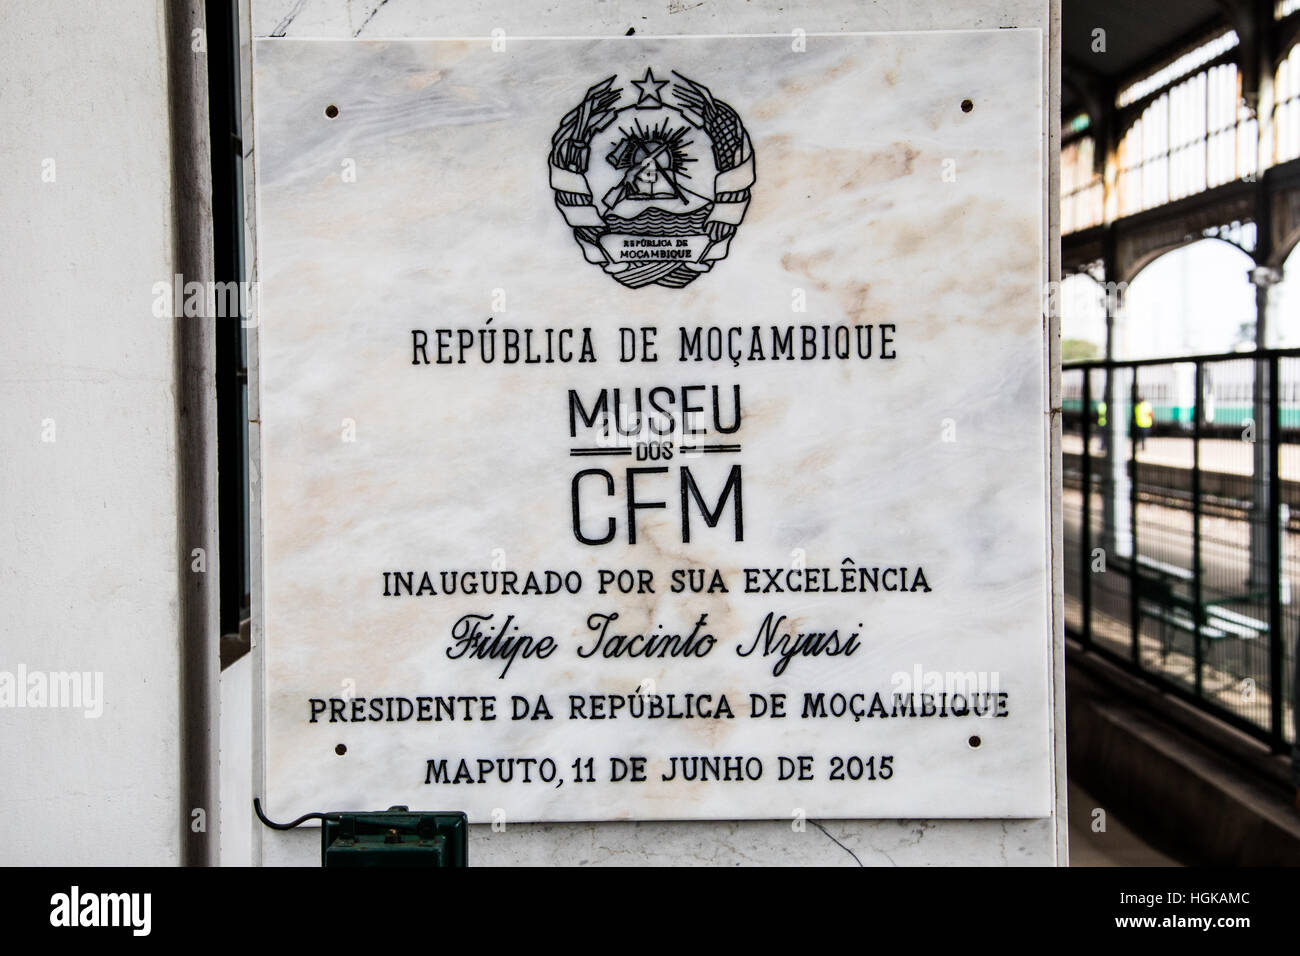 CFM Museo del Ferrocarril, de la estación de tren, Maputo, Mozambique Foto de stock